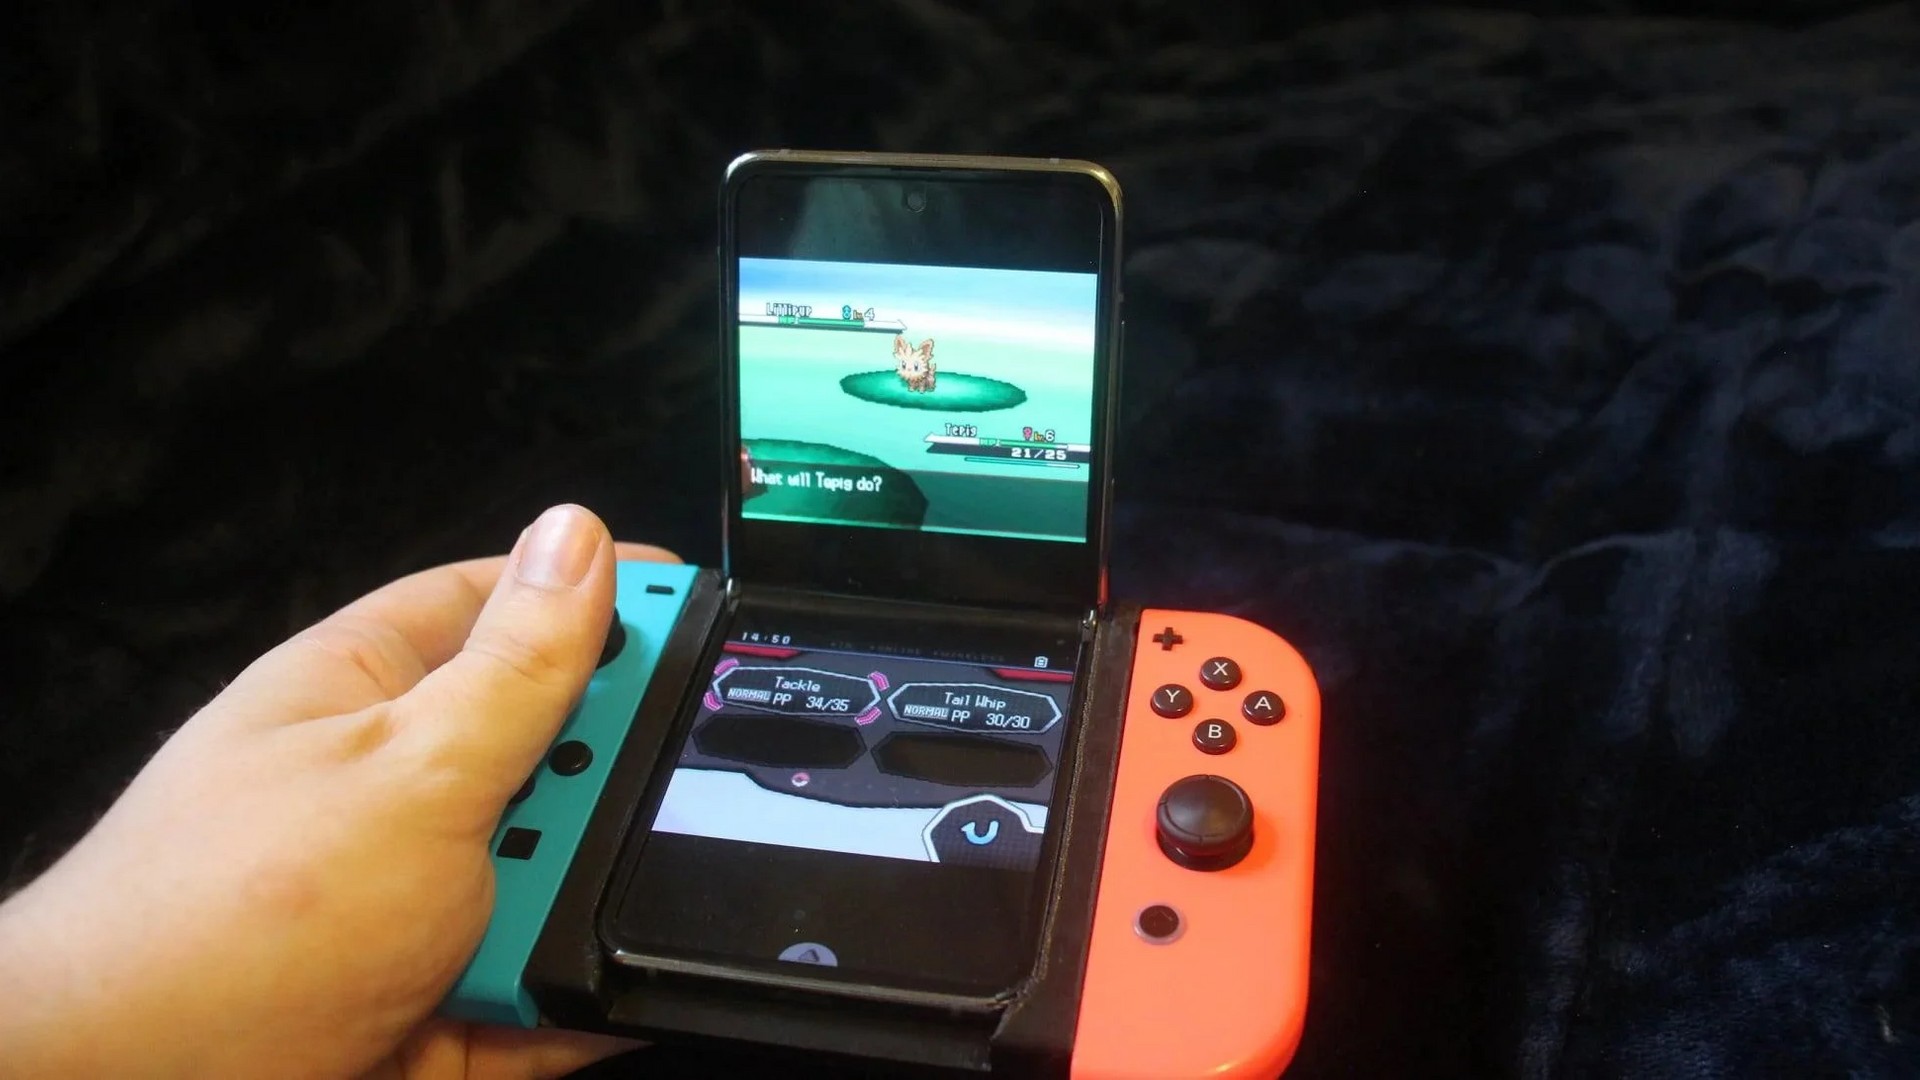 Fotos: Jogos grátis 'transformam' smartphone em videogame; veja